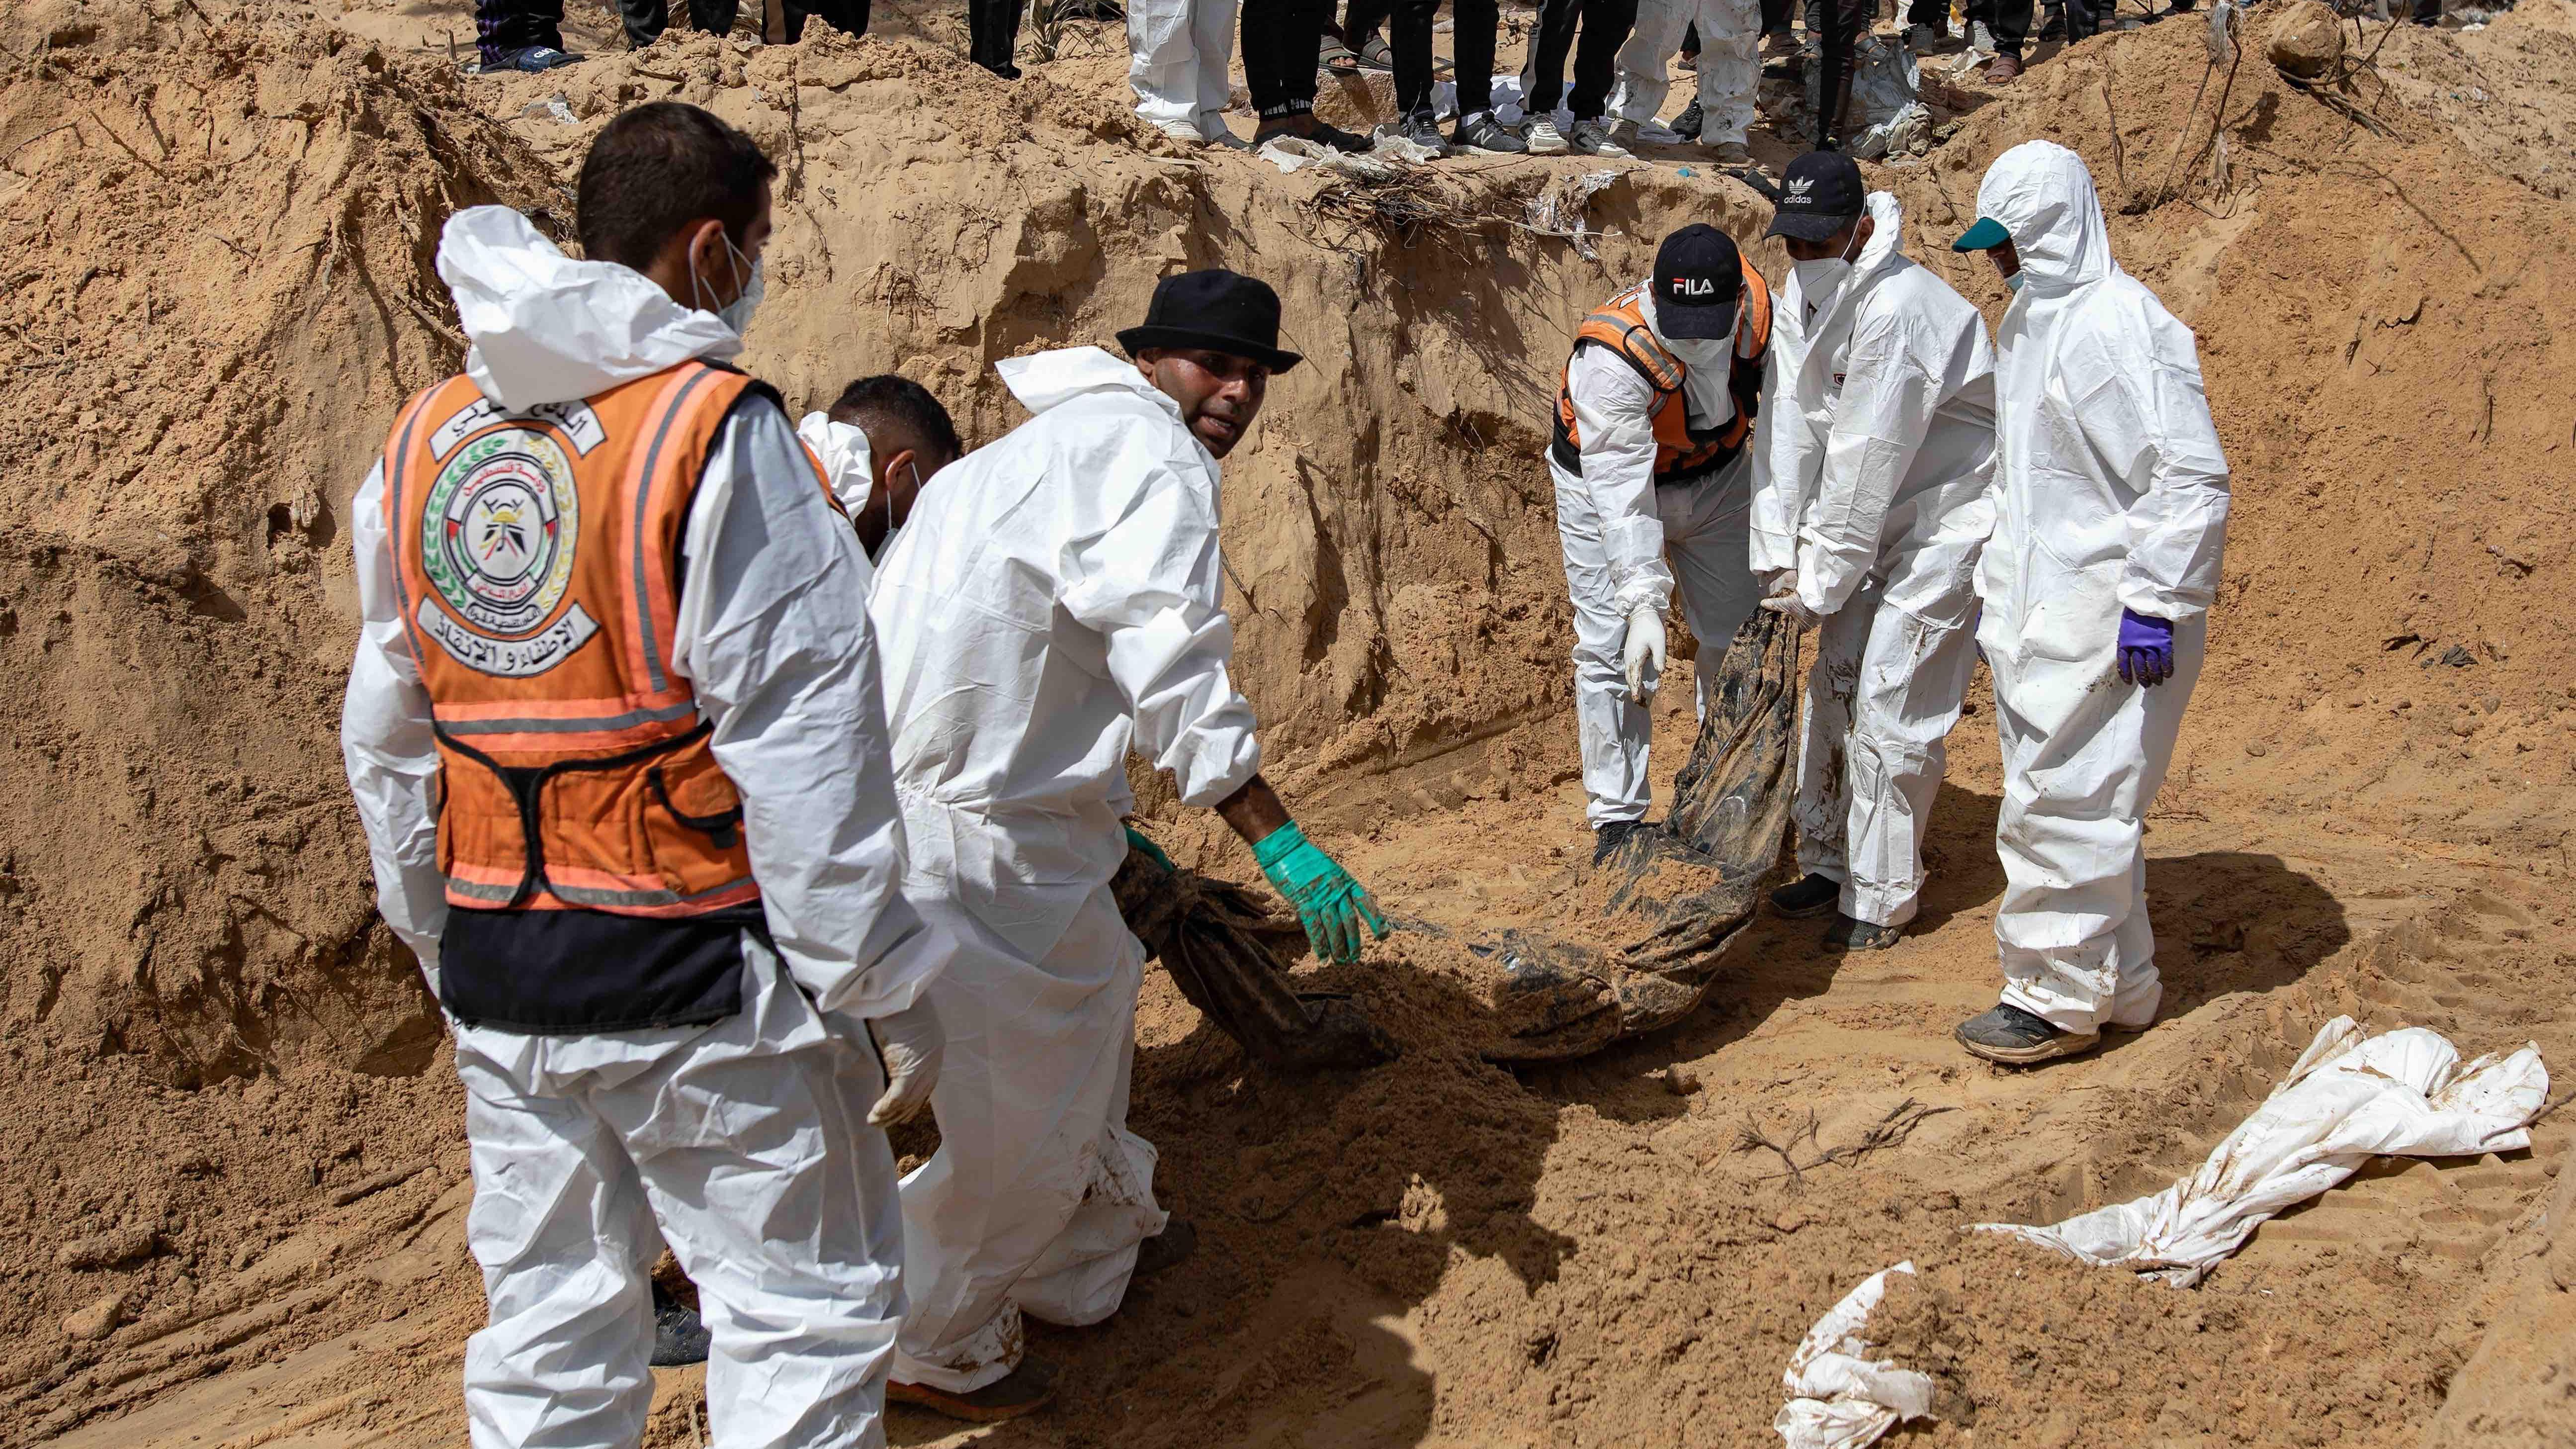 지난 21일 작업자들이 천으로 감싼 시신을 땅속에서 끌어올리고 있는 모습